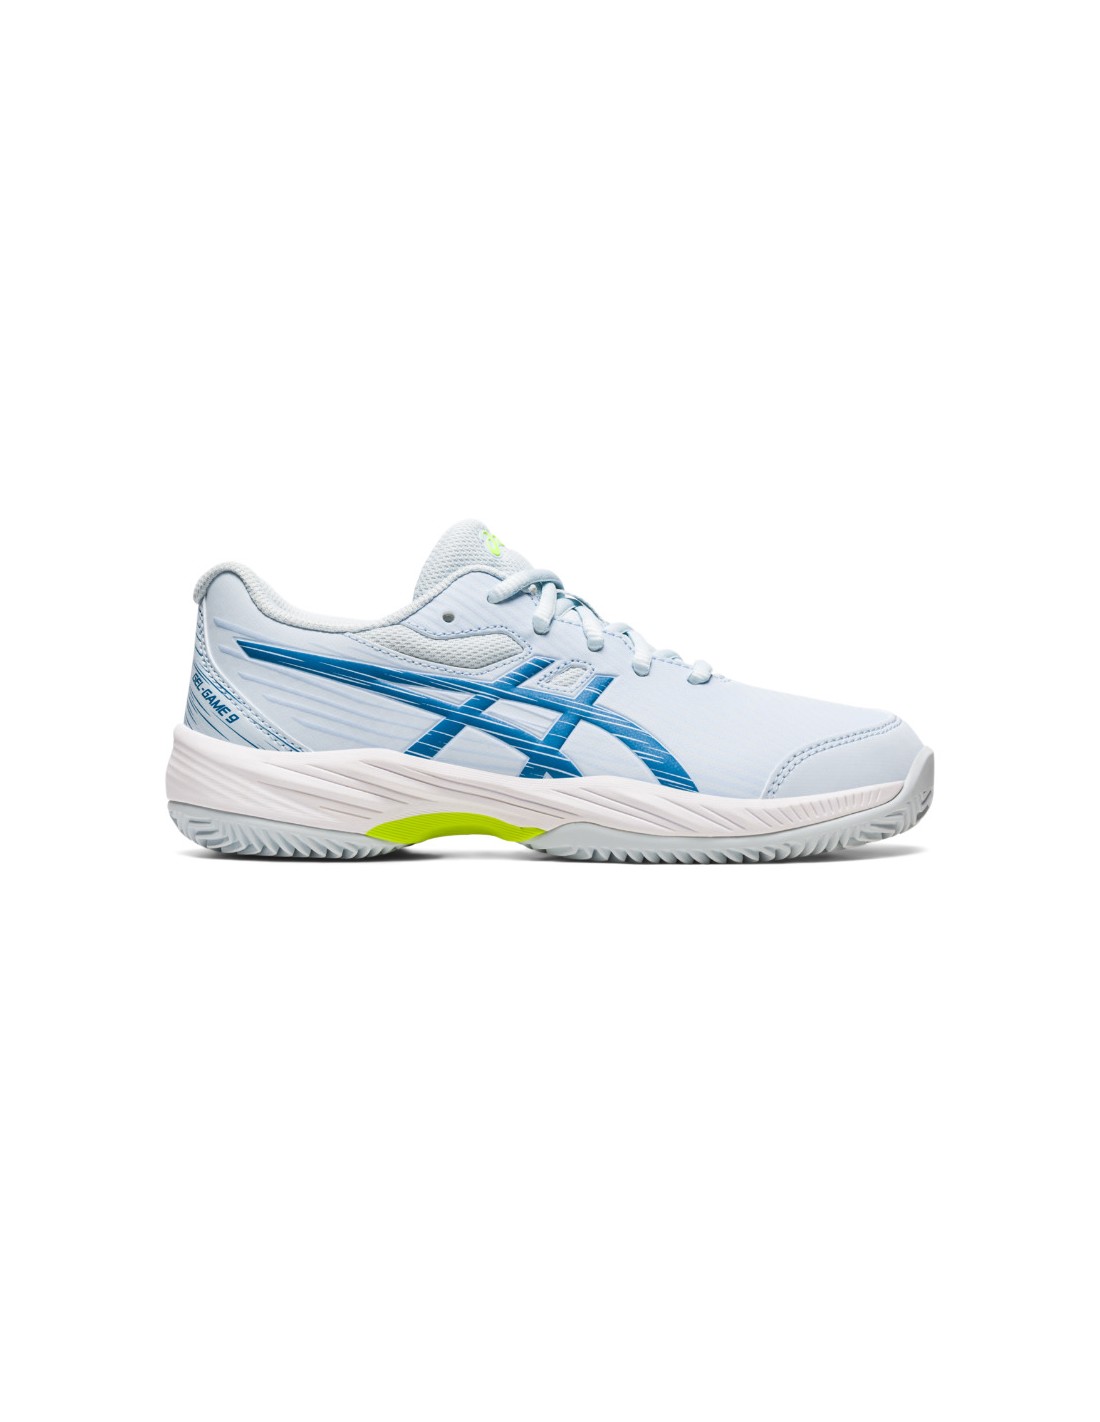 Zapatillas de Tenis ASICS Gel-Game 9 Clay/Oc Mujer Blanco/Azul